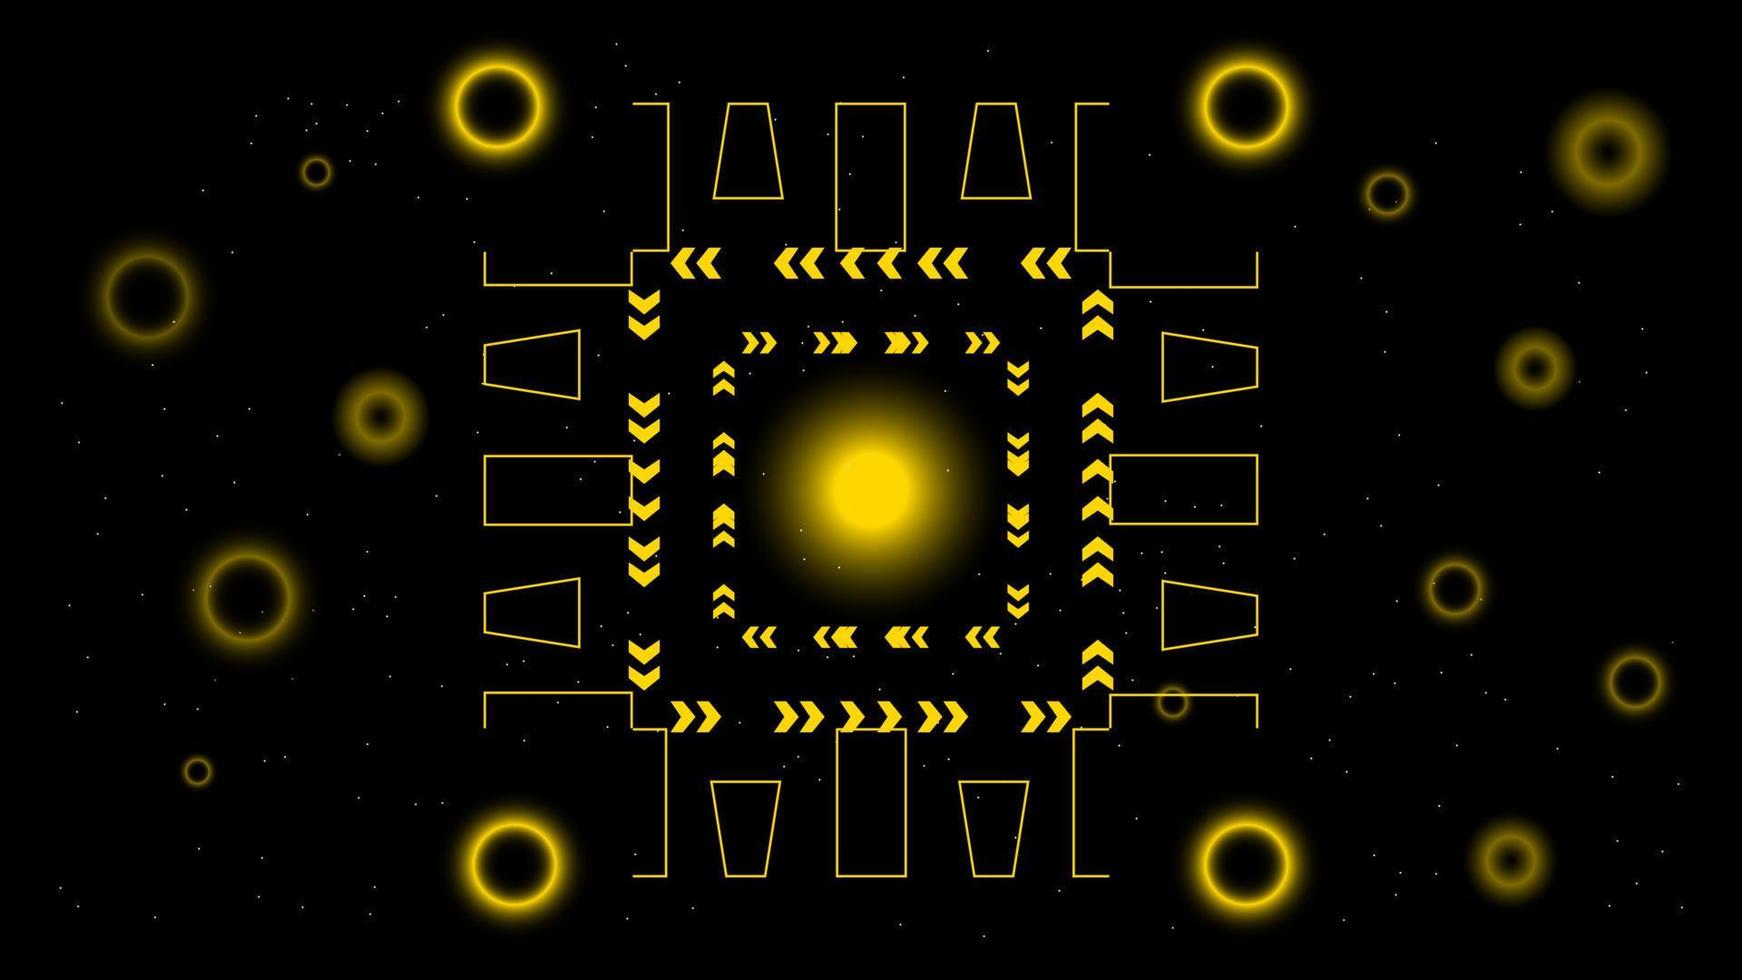 ui interface hi-tec tecnologia digital abstrata preta e dourada com partículas brilhantes, ilustração vetorial vetor